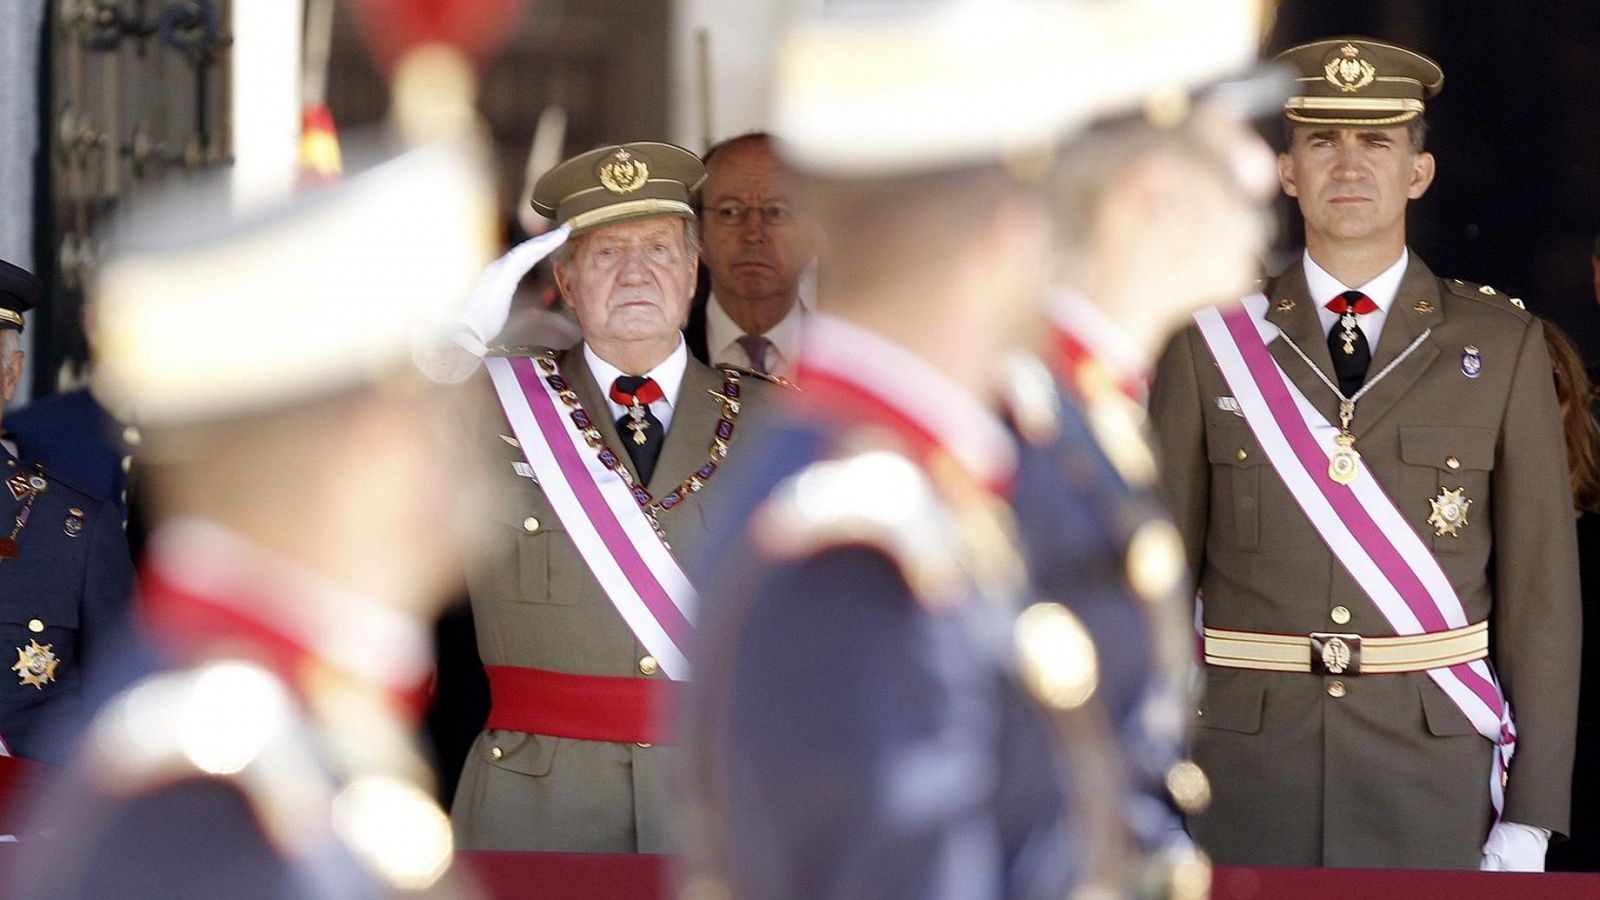 Retrato de España de 2014, año de la proclamación de Felipe VI